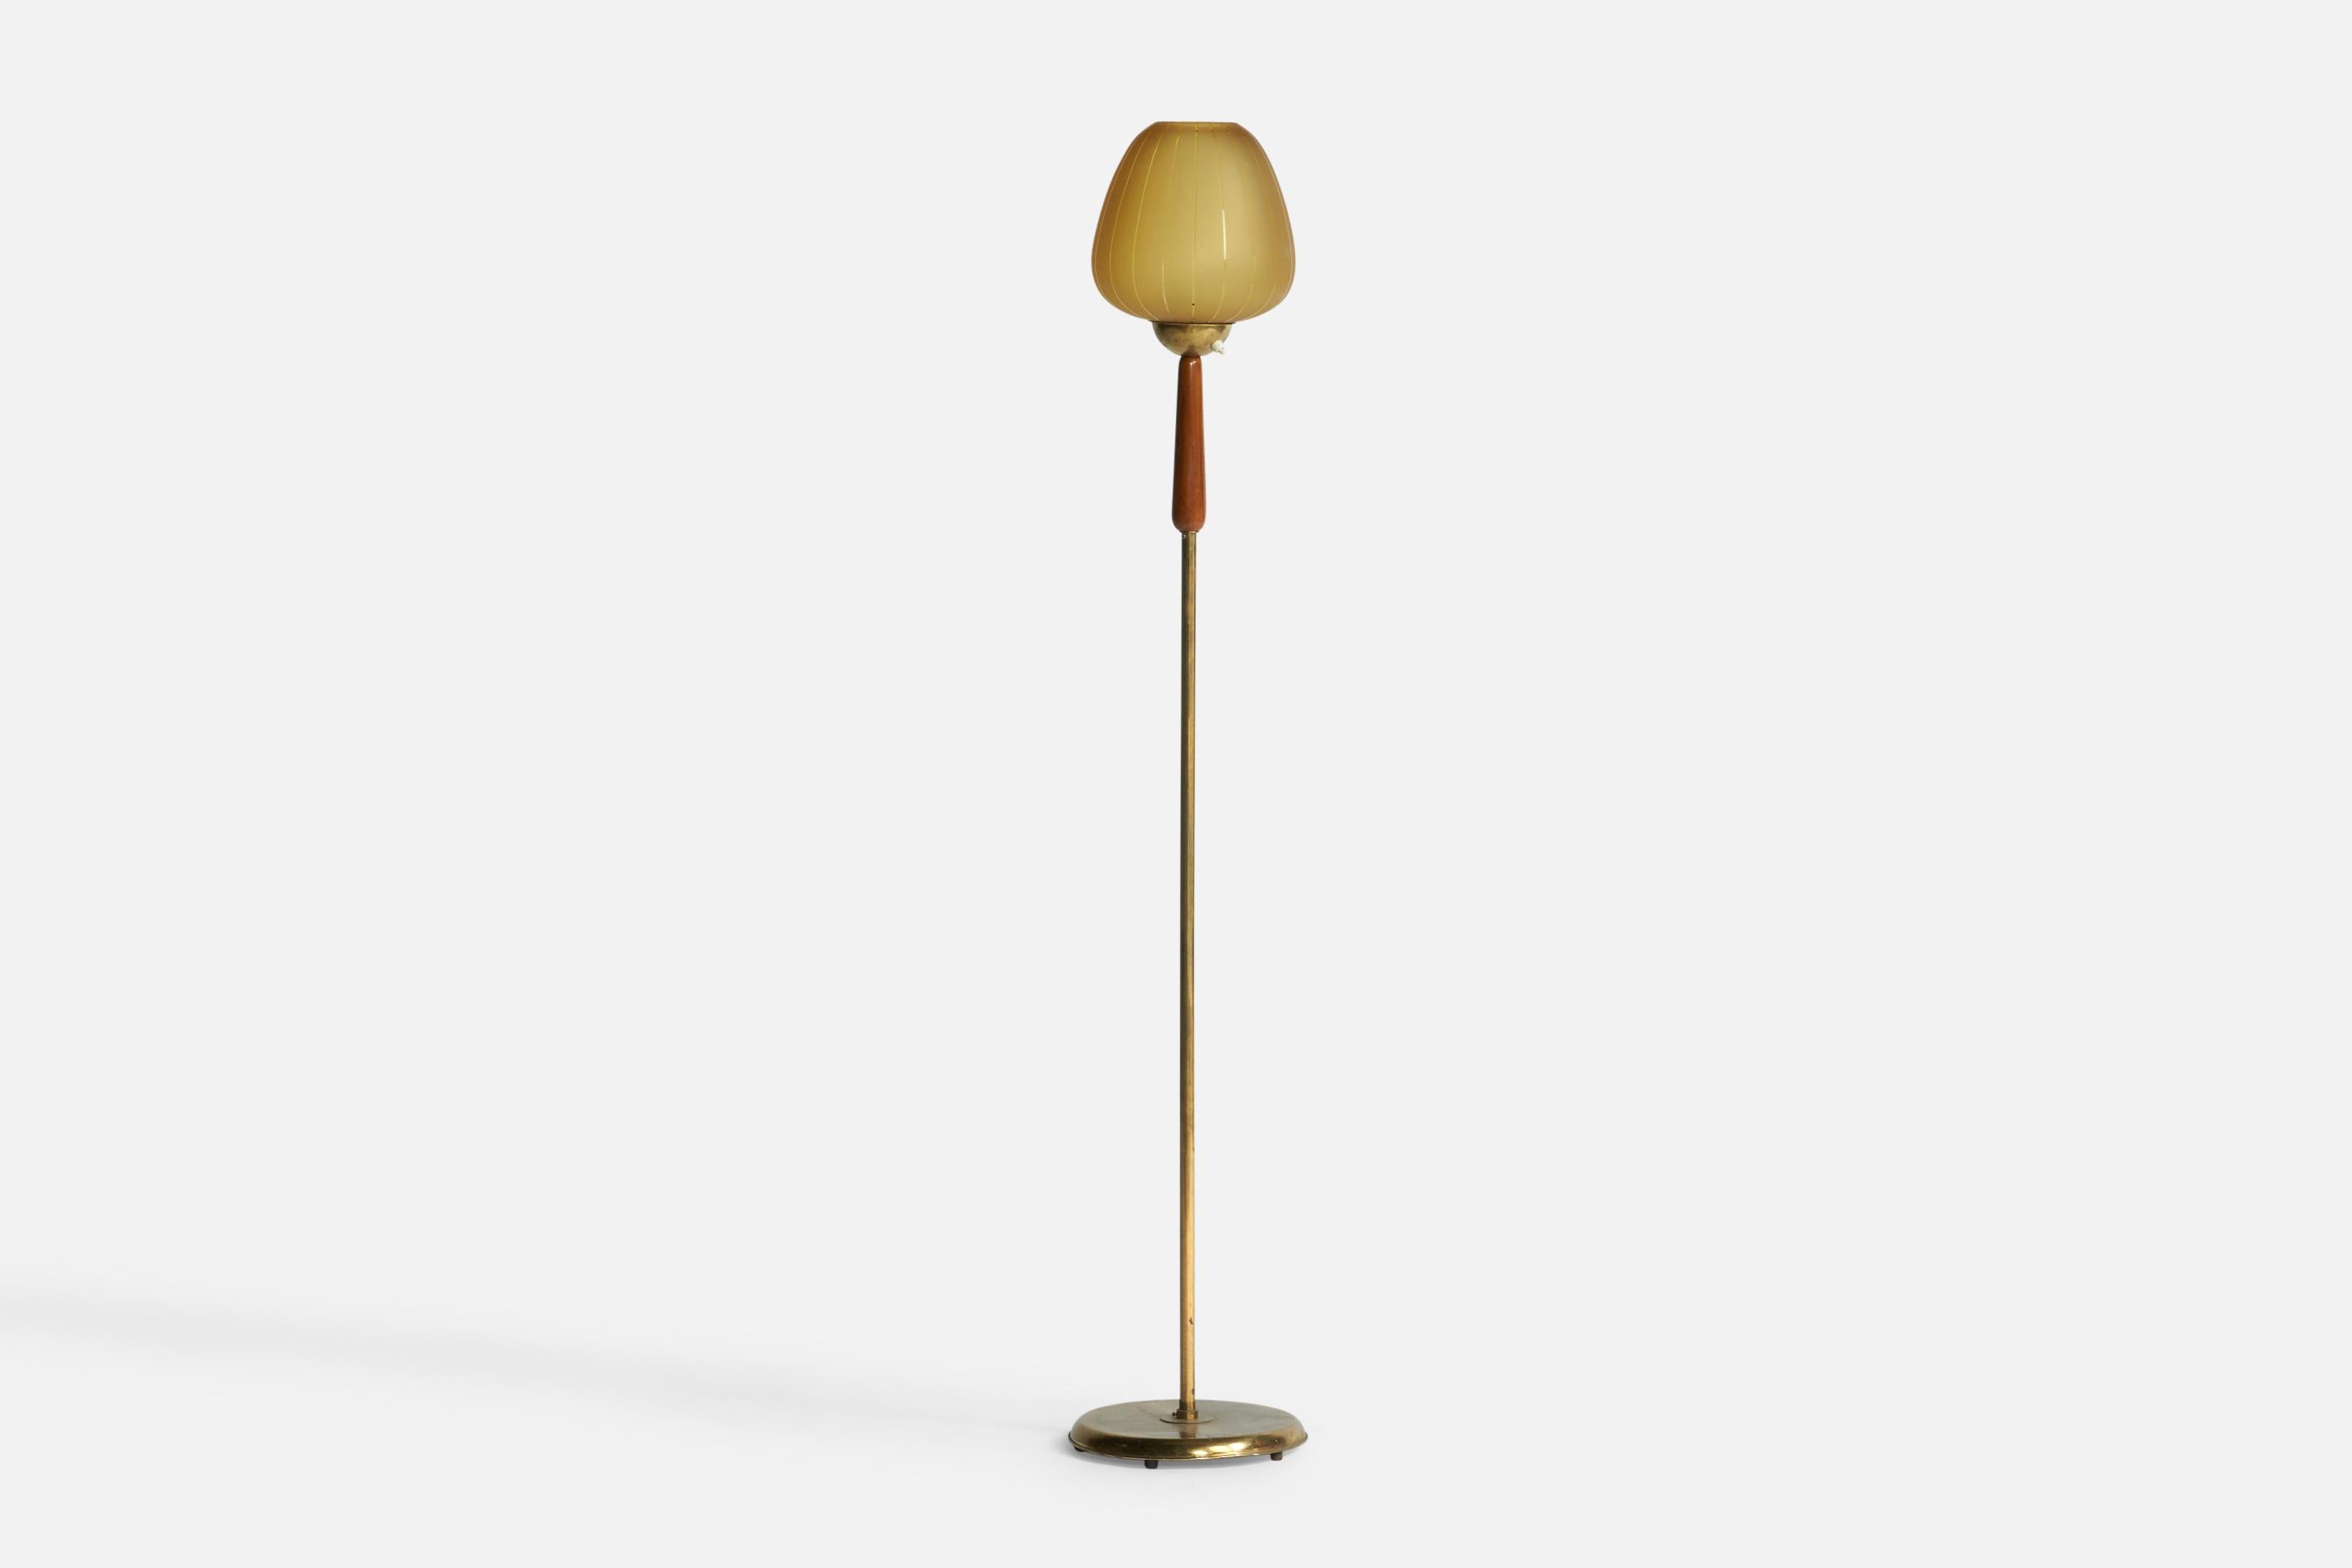 Lampadaire en laiton, teck et verre gravé de couleur beige, conçu et produit en Suède, vers les années 1950.

Dimensions hors tout (pouces) : 59,5